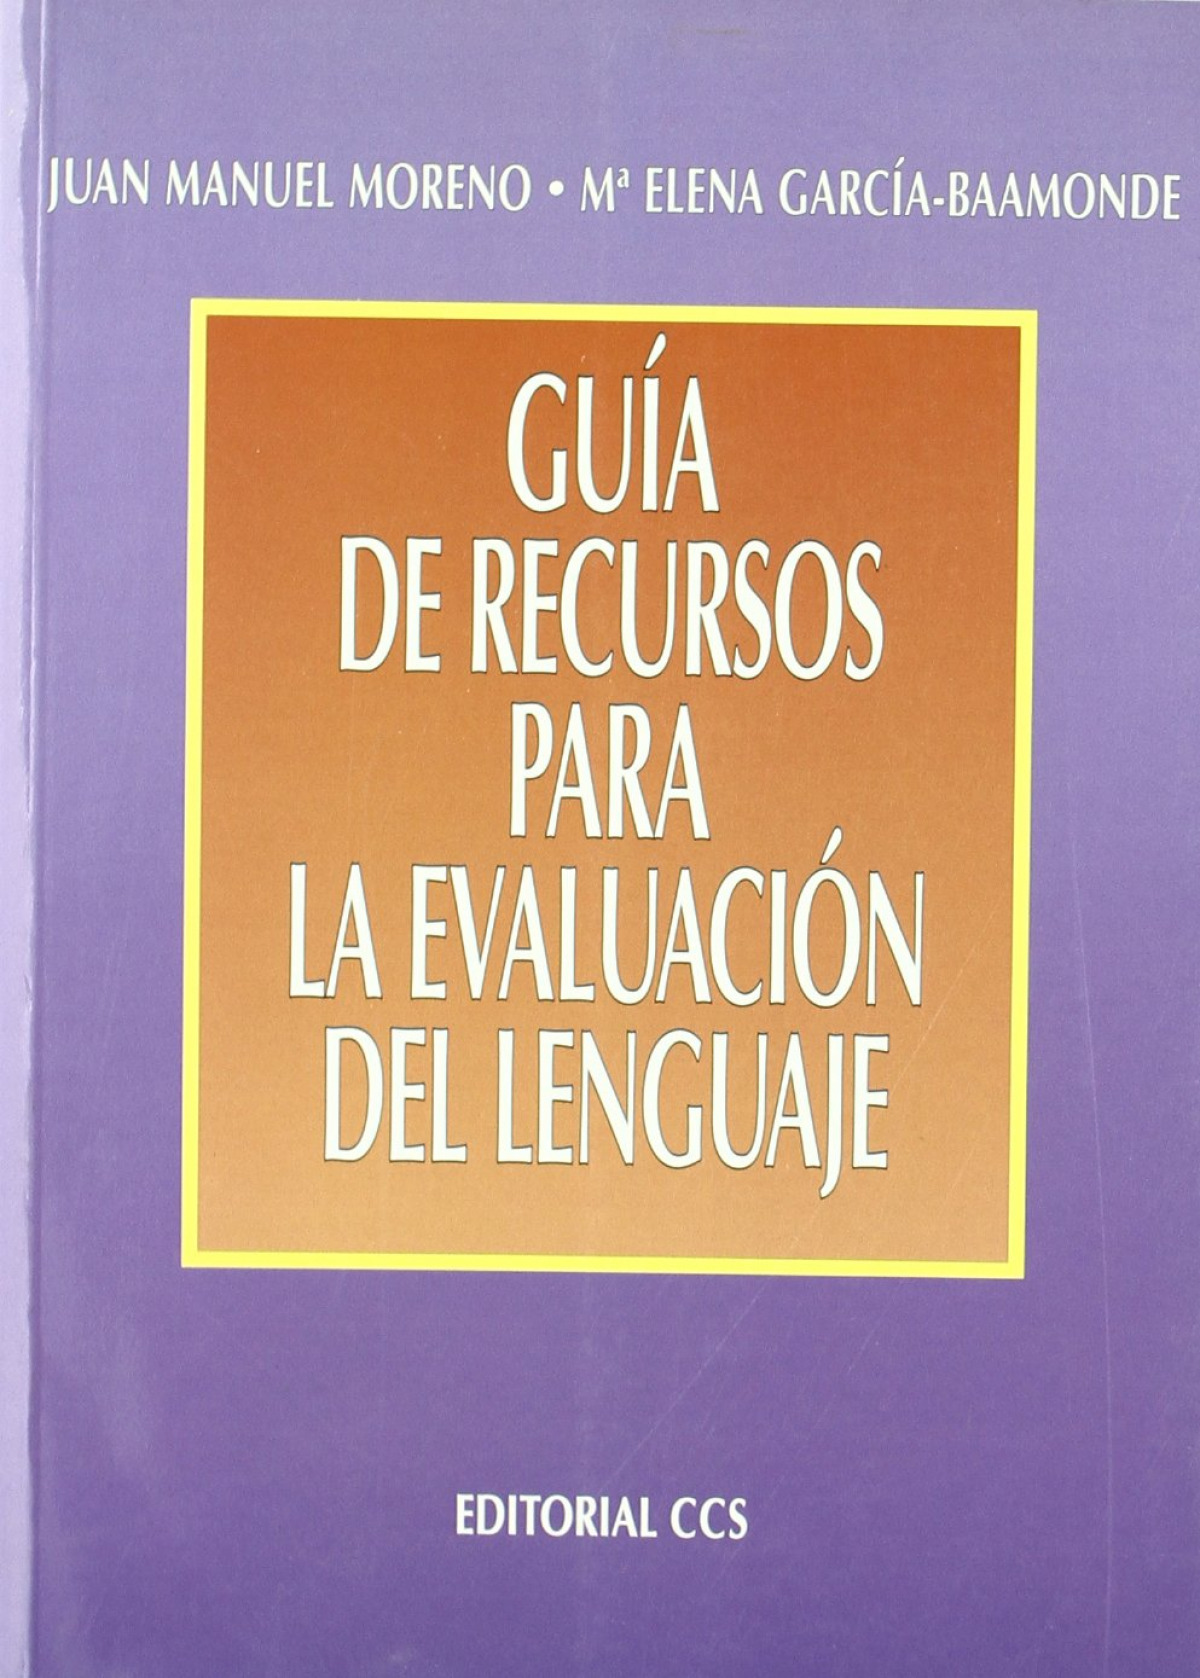 Guia de recursos para la evaluacion del lenguaje - Moreno, Juan Manuel/García-Baamonde, Mª Elena